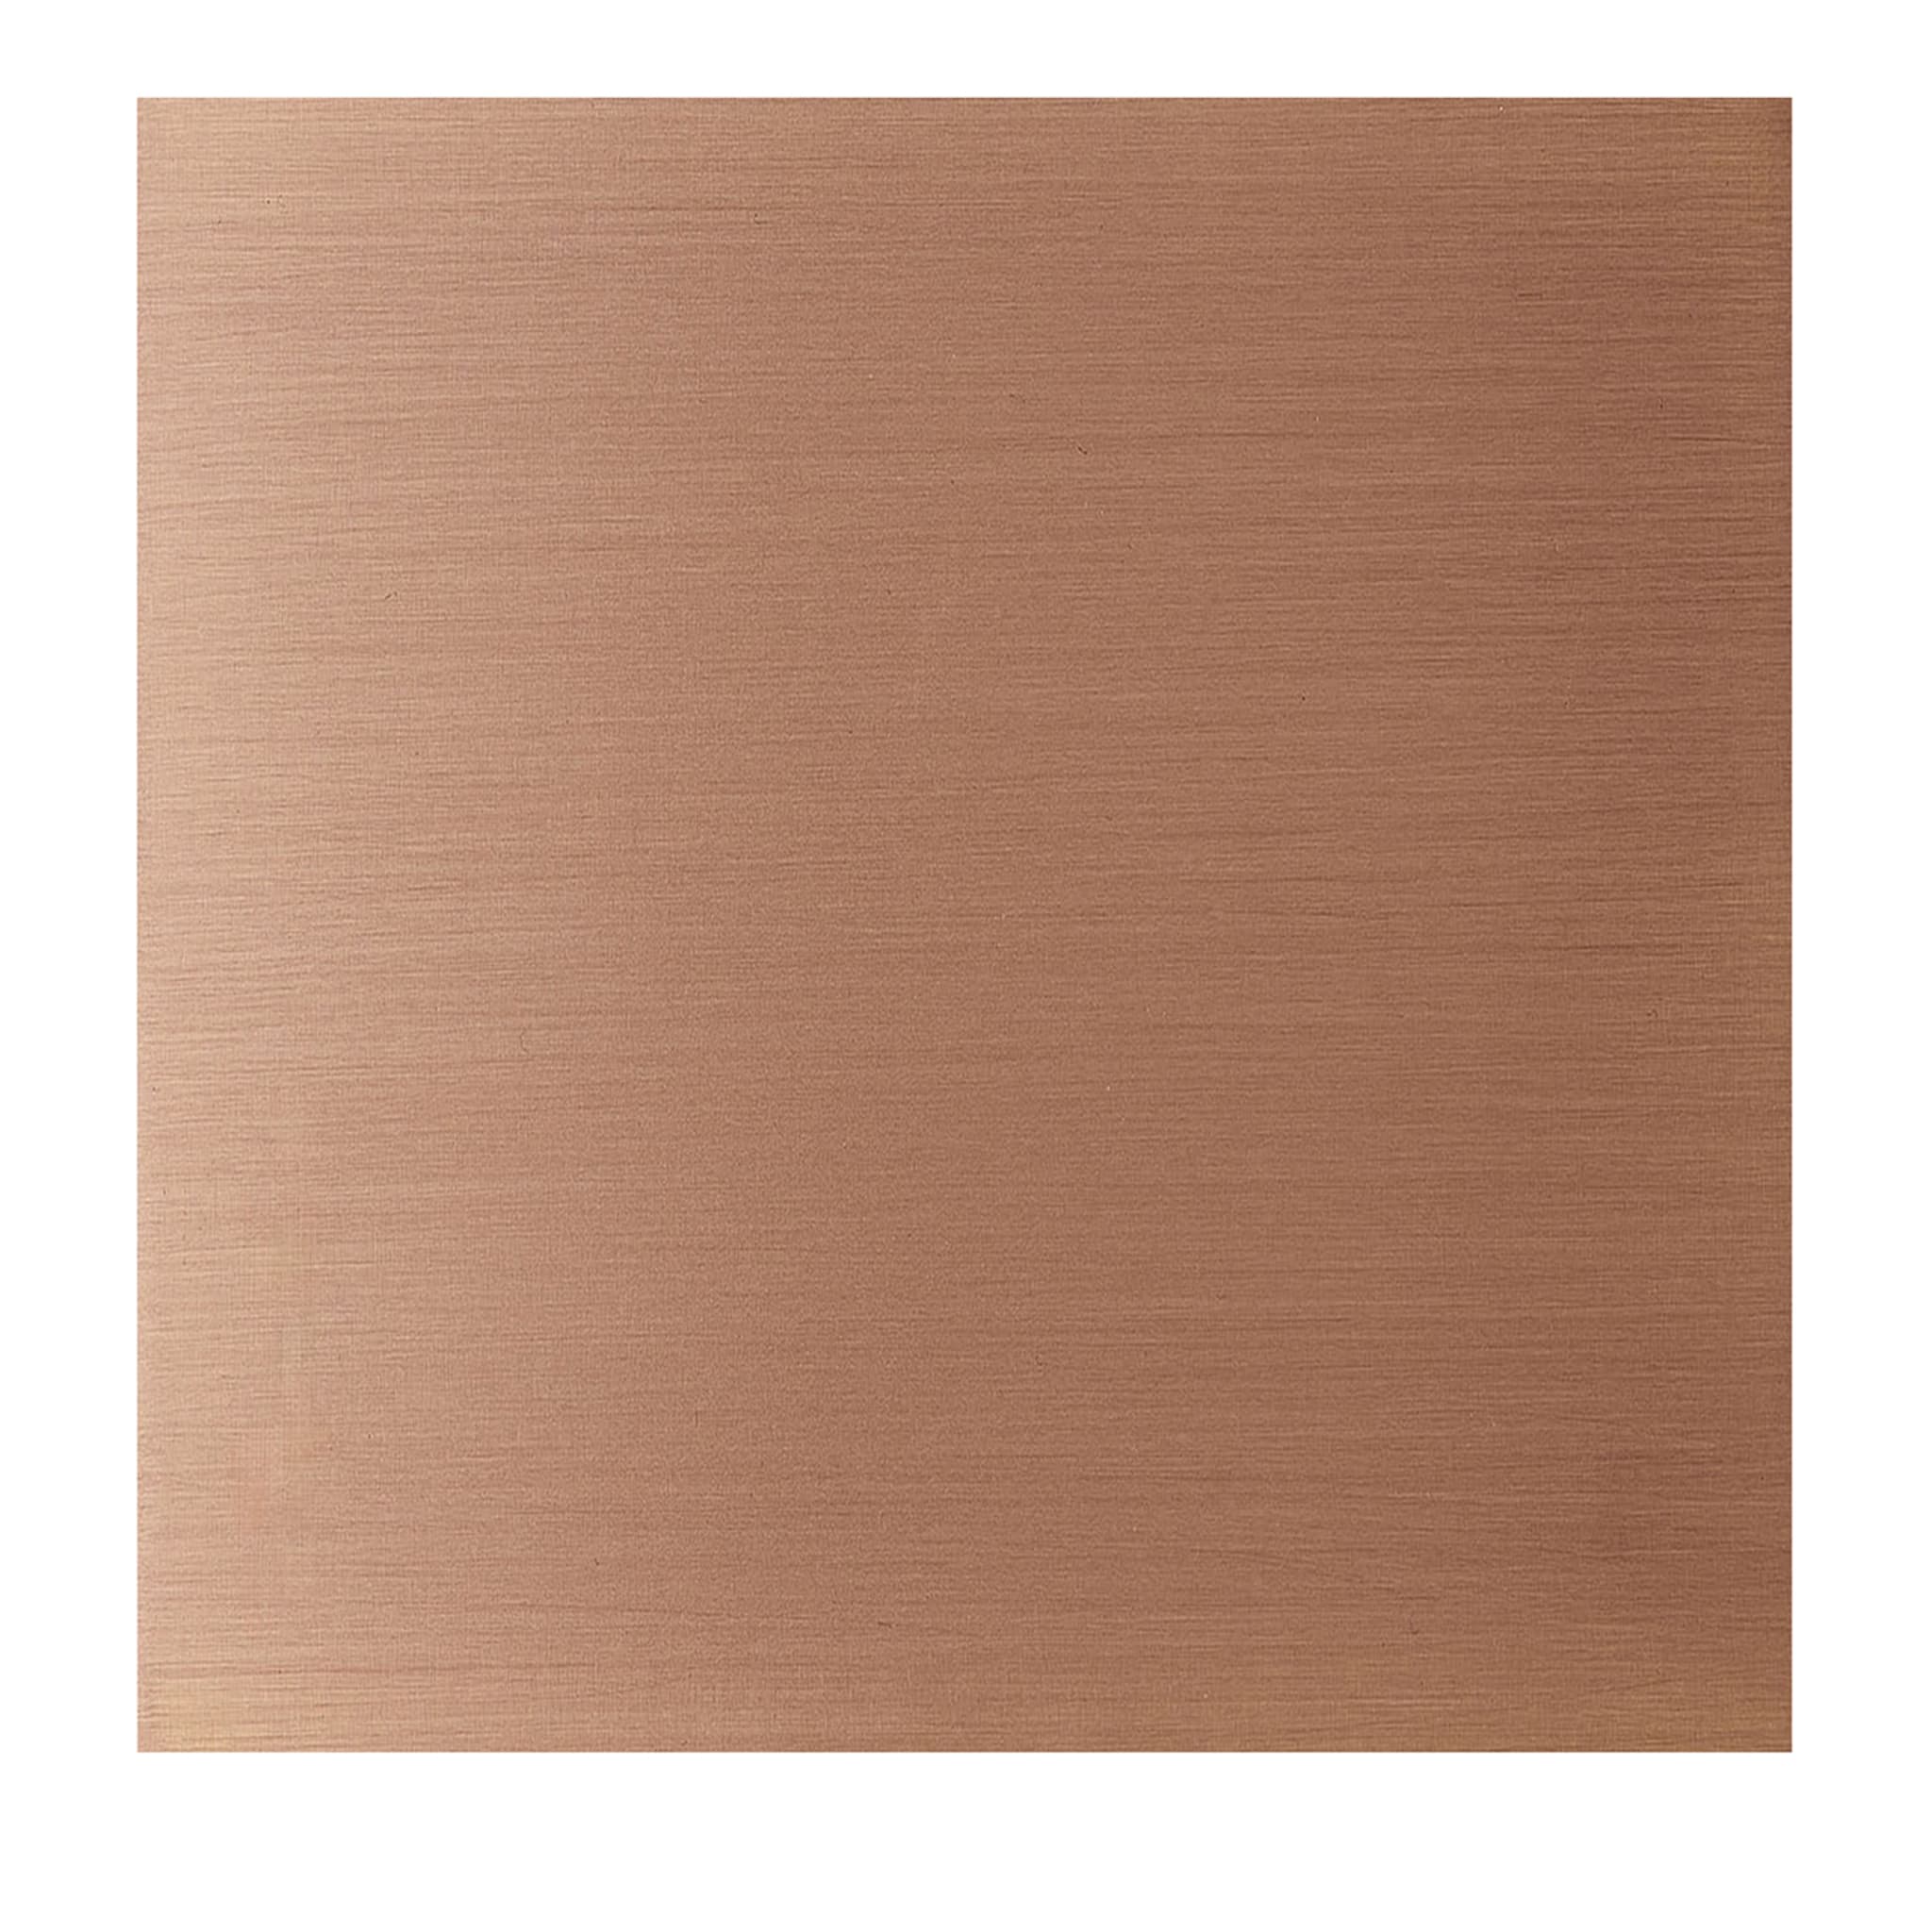 Sintesi Set of 4 Satin Copper Tiles - Main view